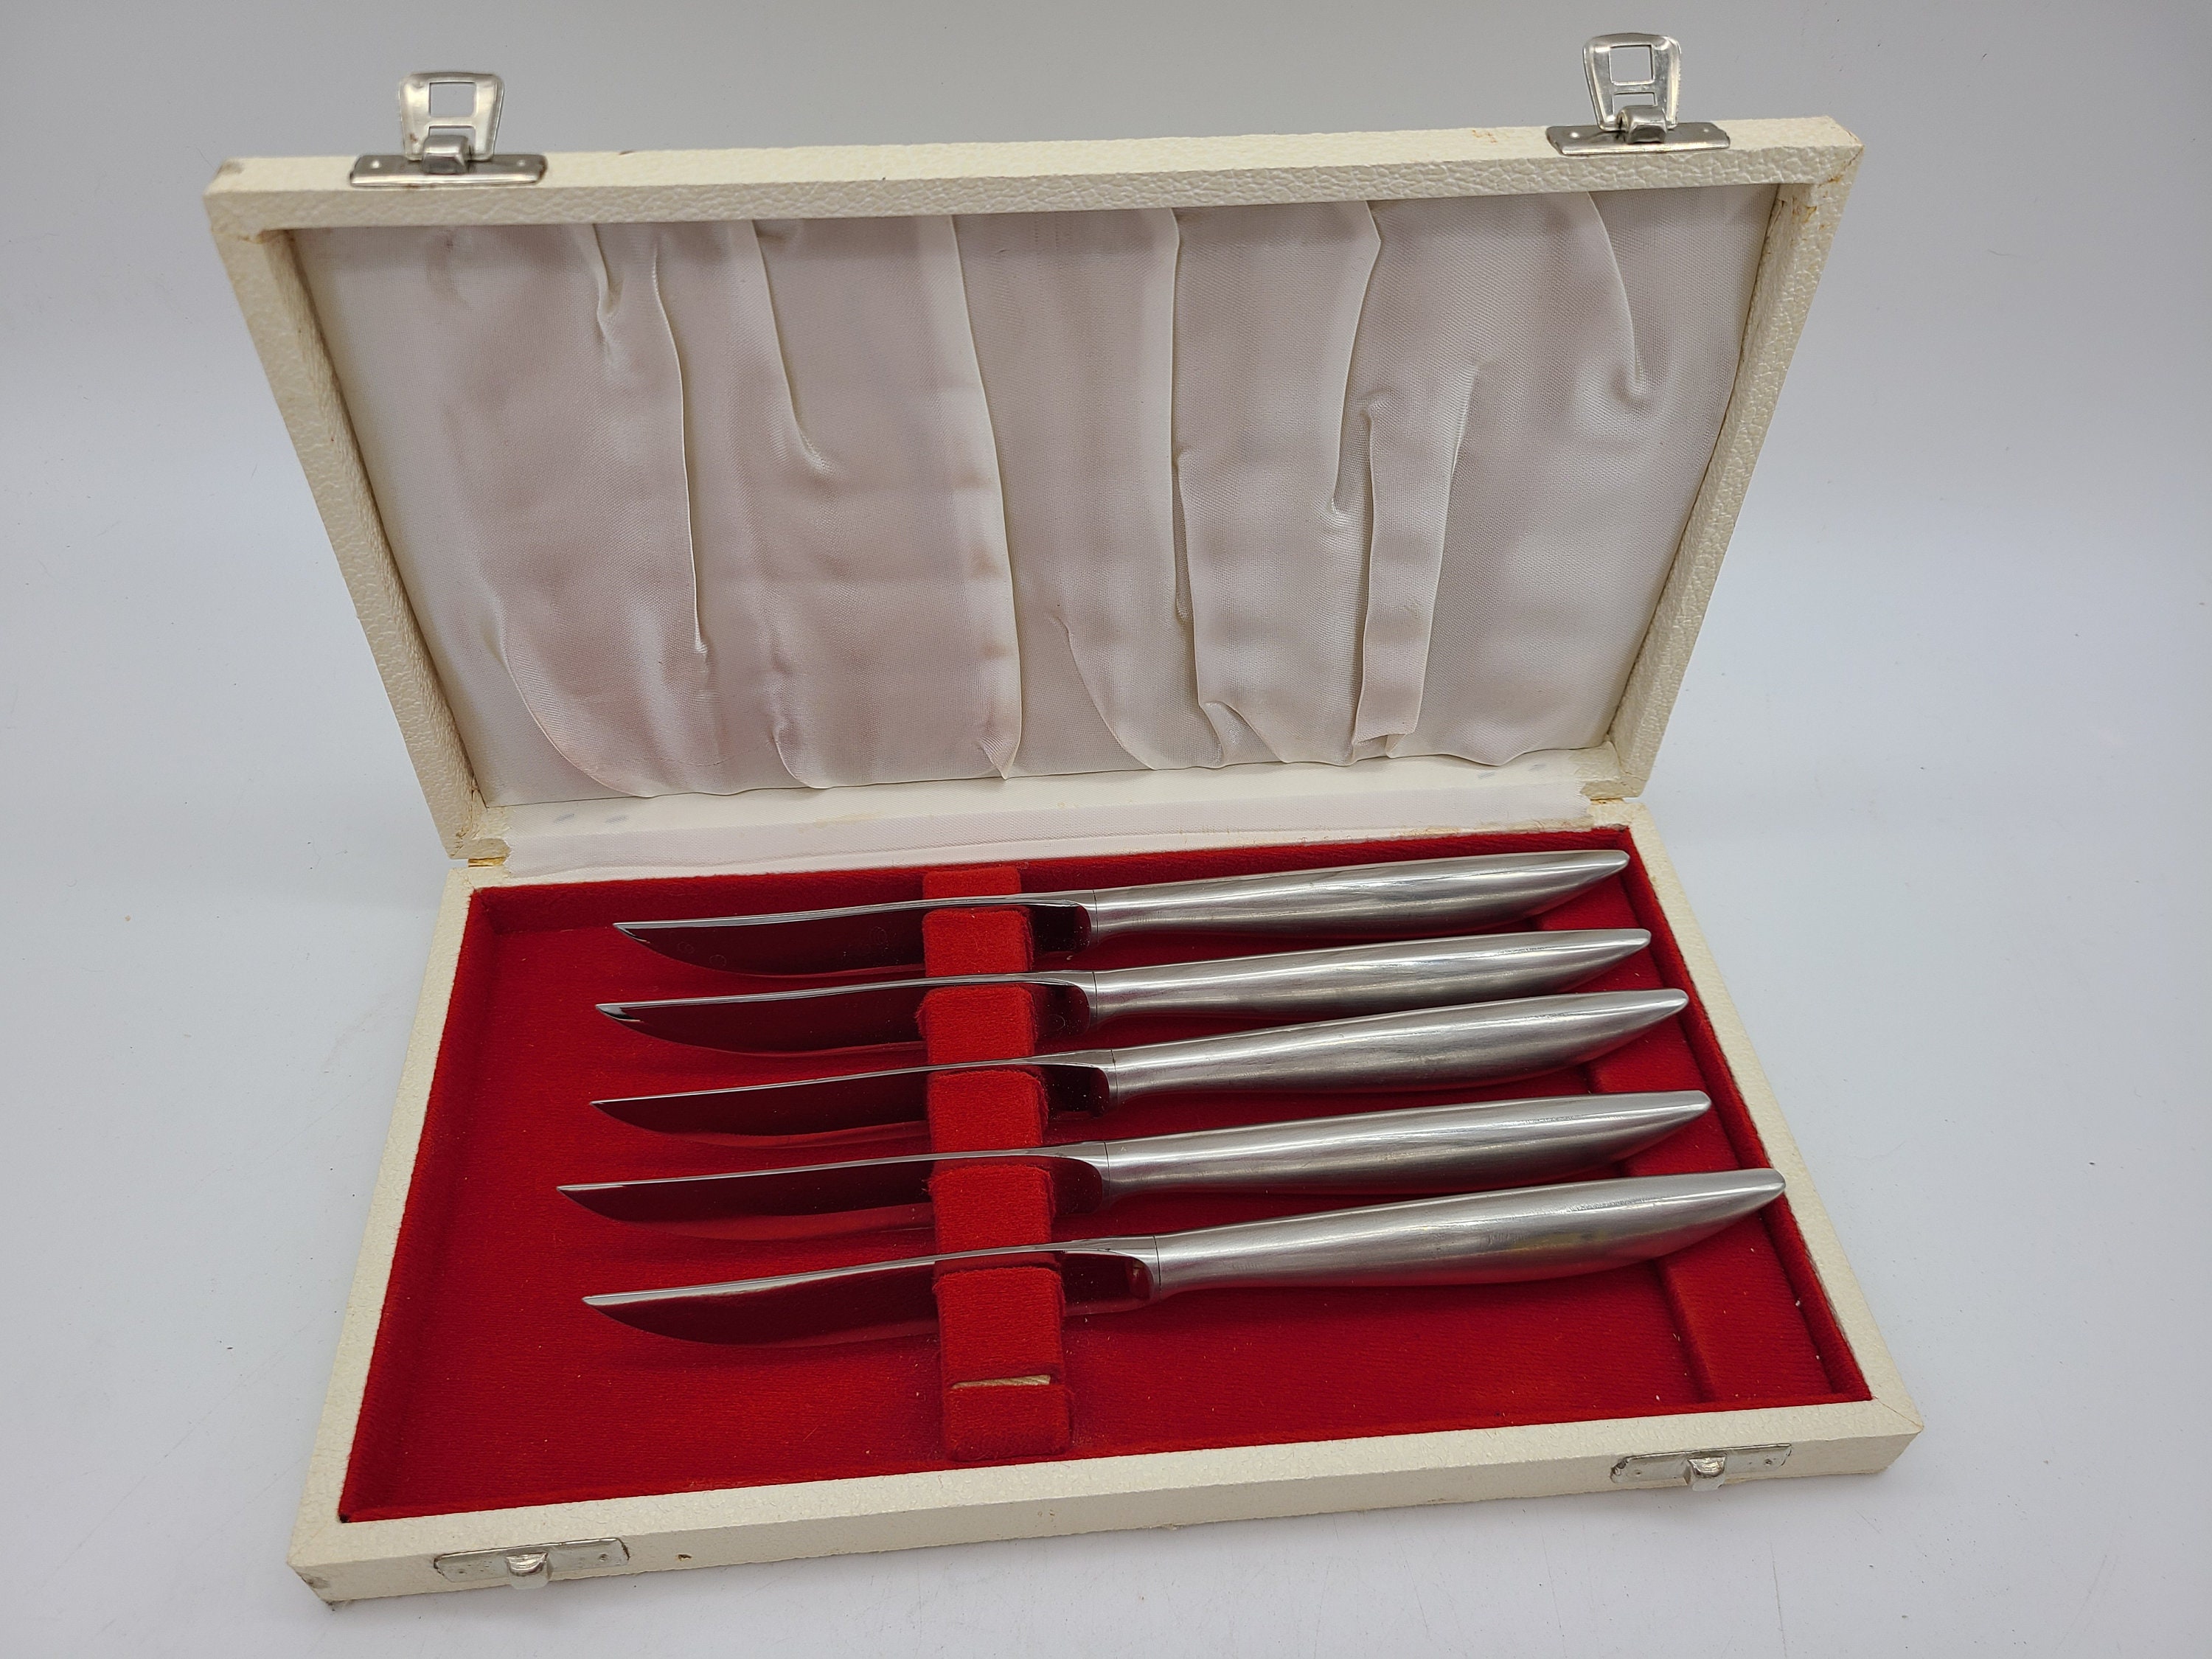 Set of meat knives 3pcs - Germany Solingen